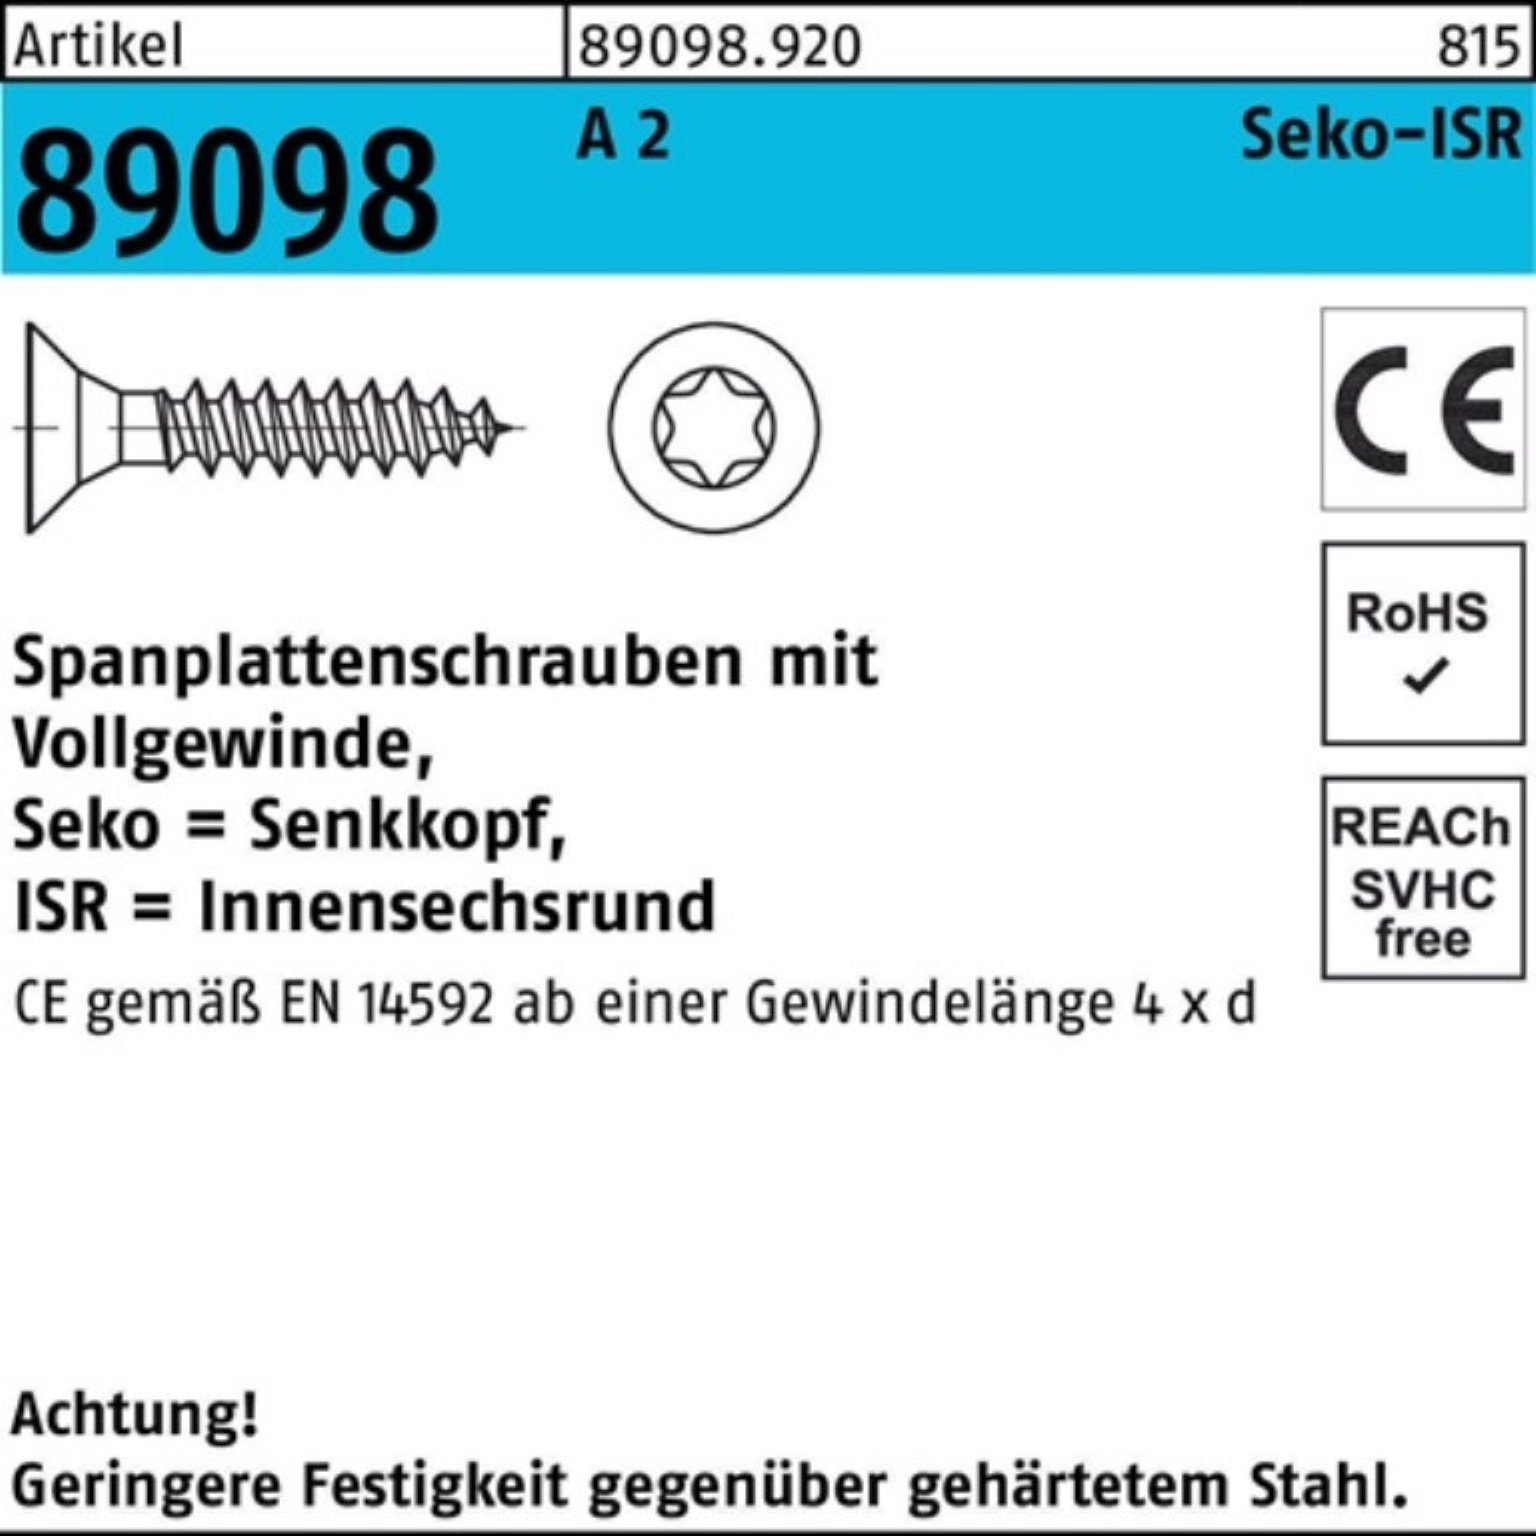 Reyher Spanplattenschraube 1000er Pack Spanplattenschraube R 89098 SEKO ISR VG 4x 20-T20 A 2 1000